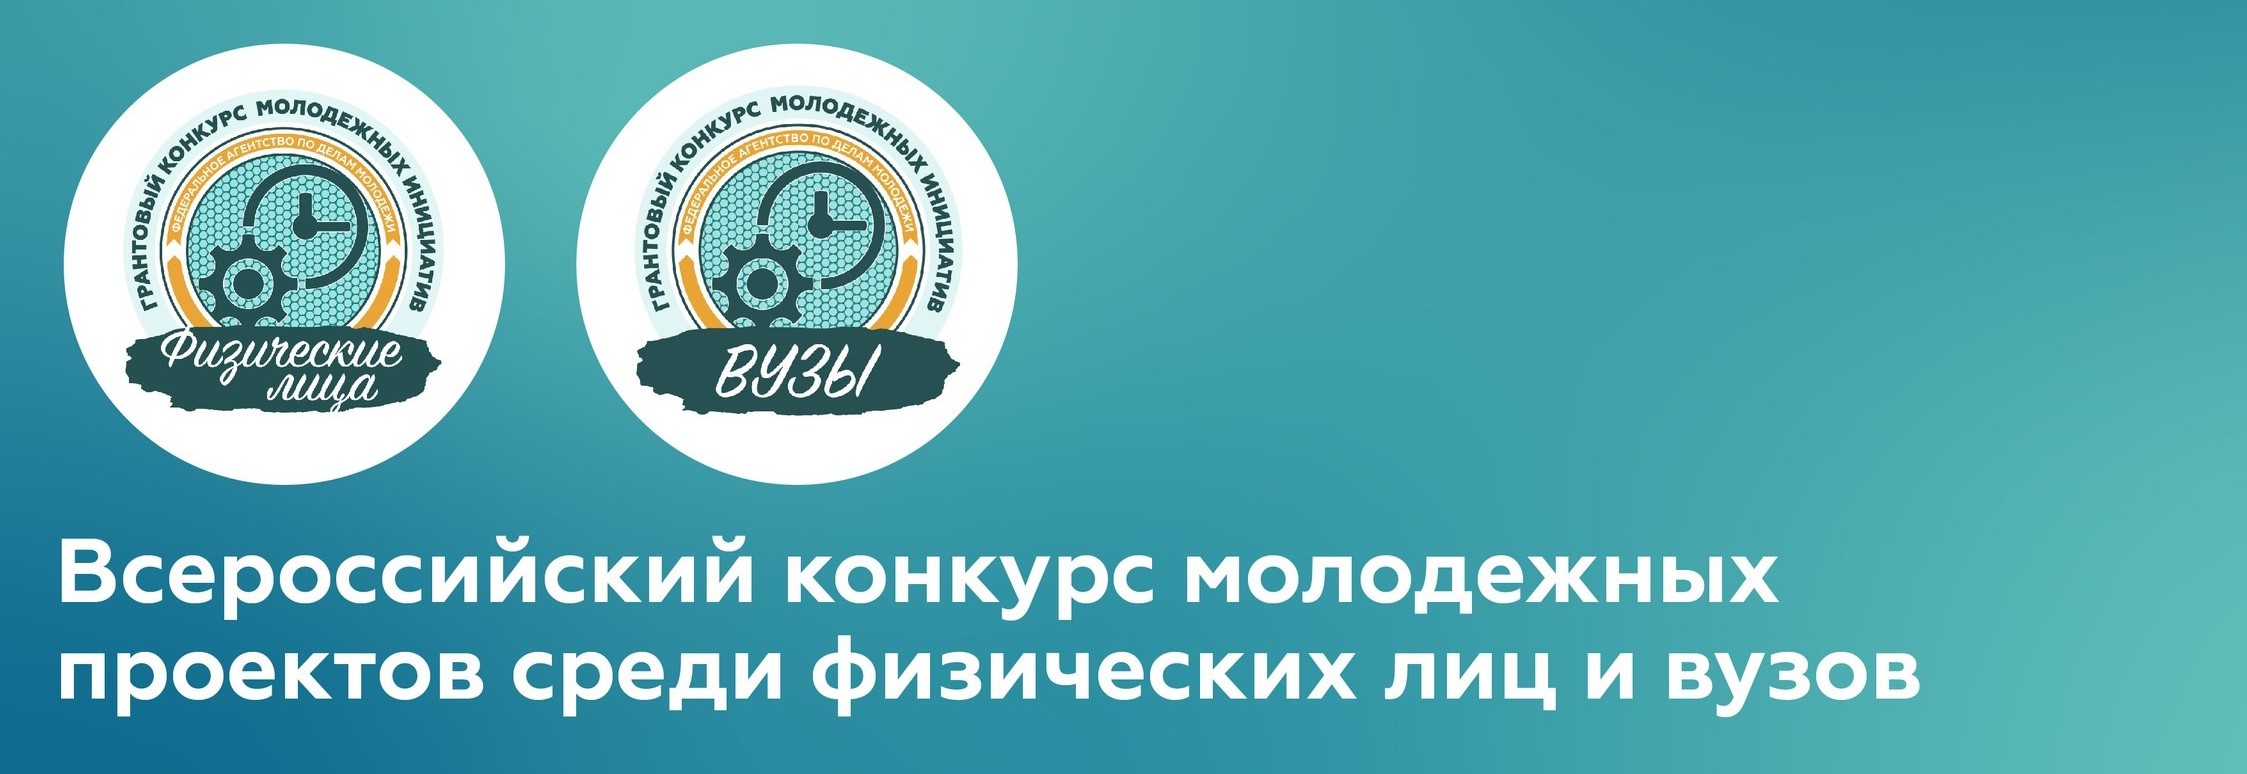 Всероссийский конкурс молодежных проектов приглашает  к участию